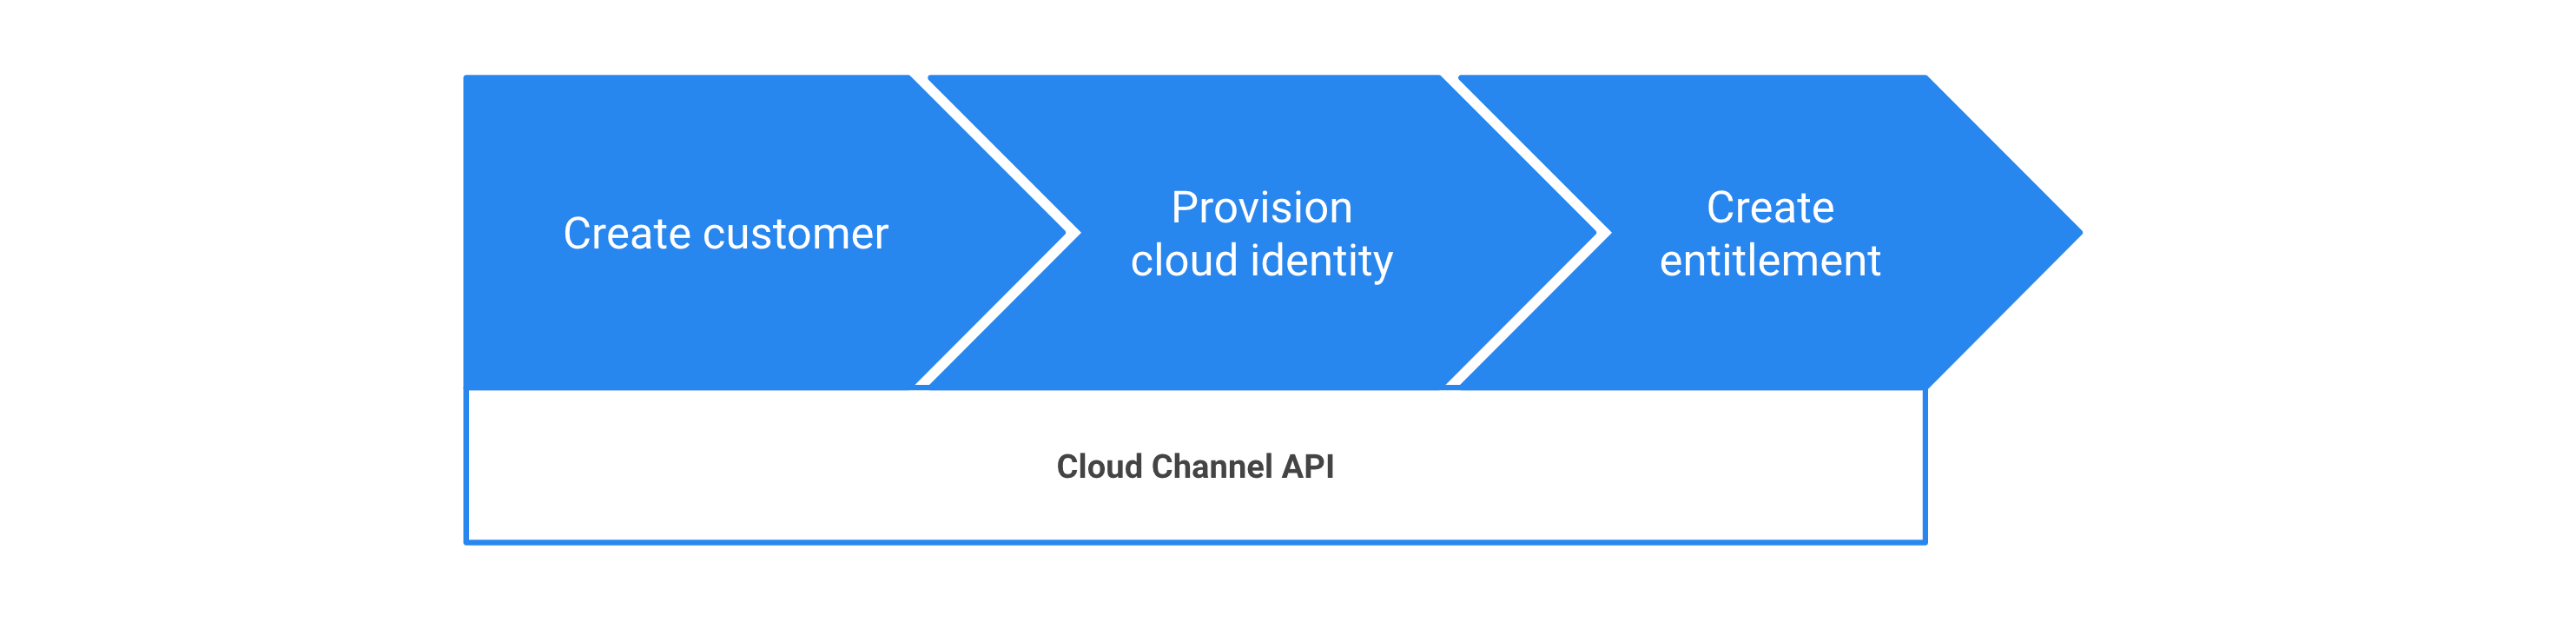 Pasos para aprovisionar Google Workspace mediante la API de Cloud Channel